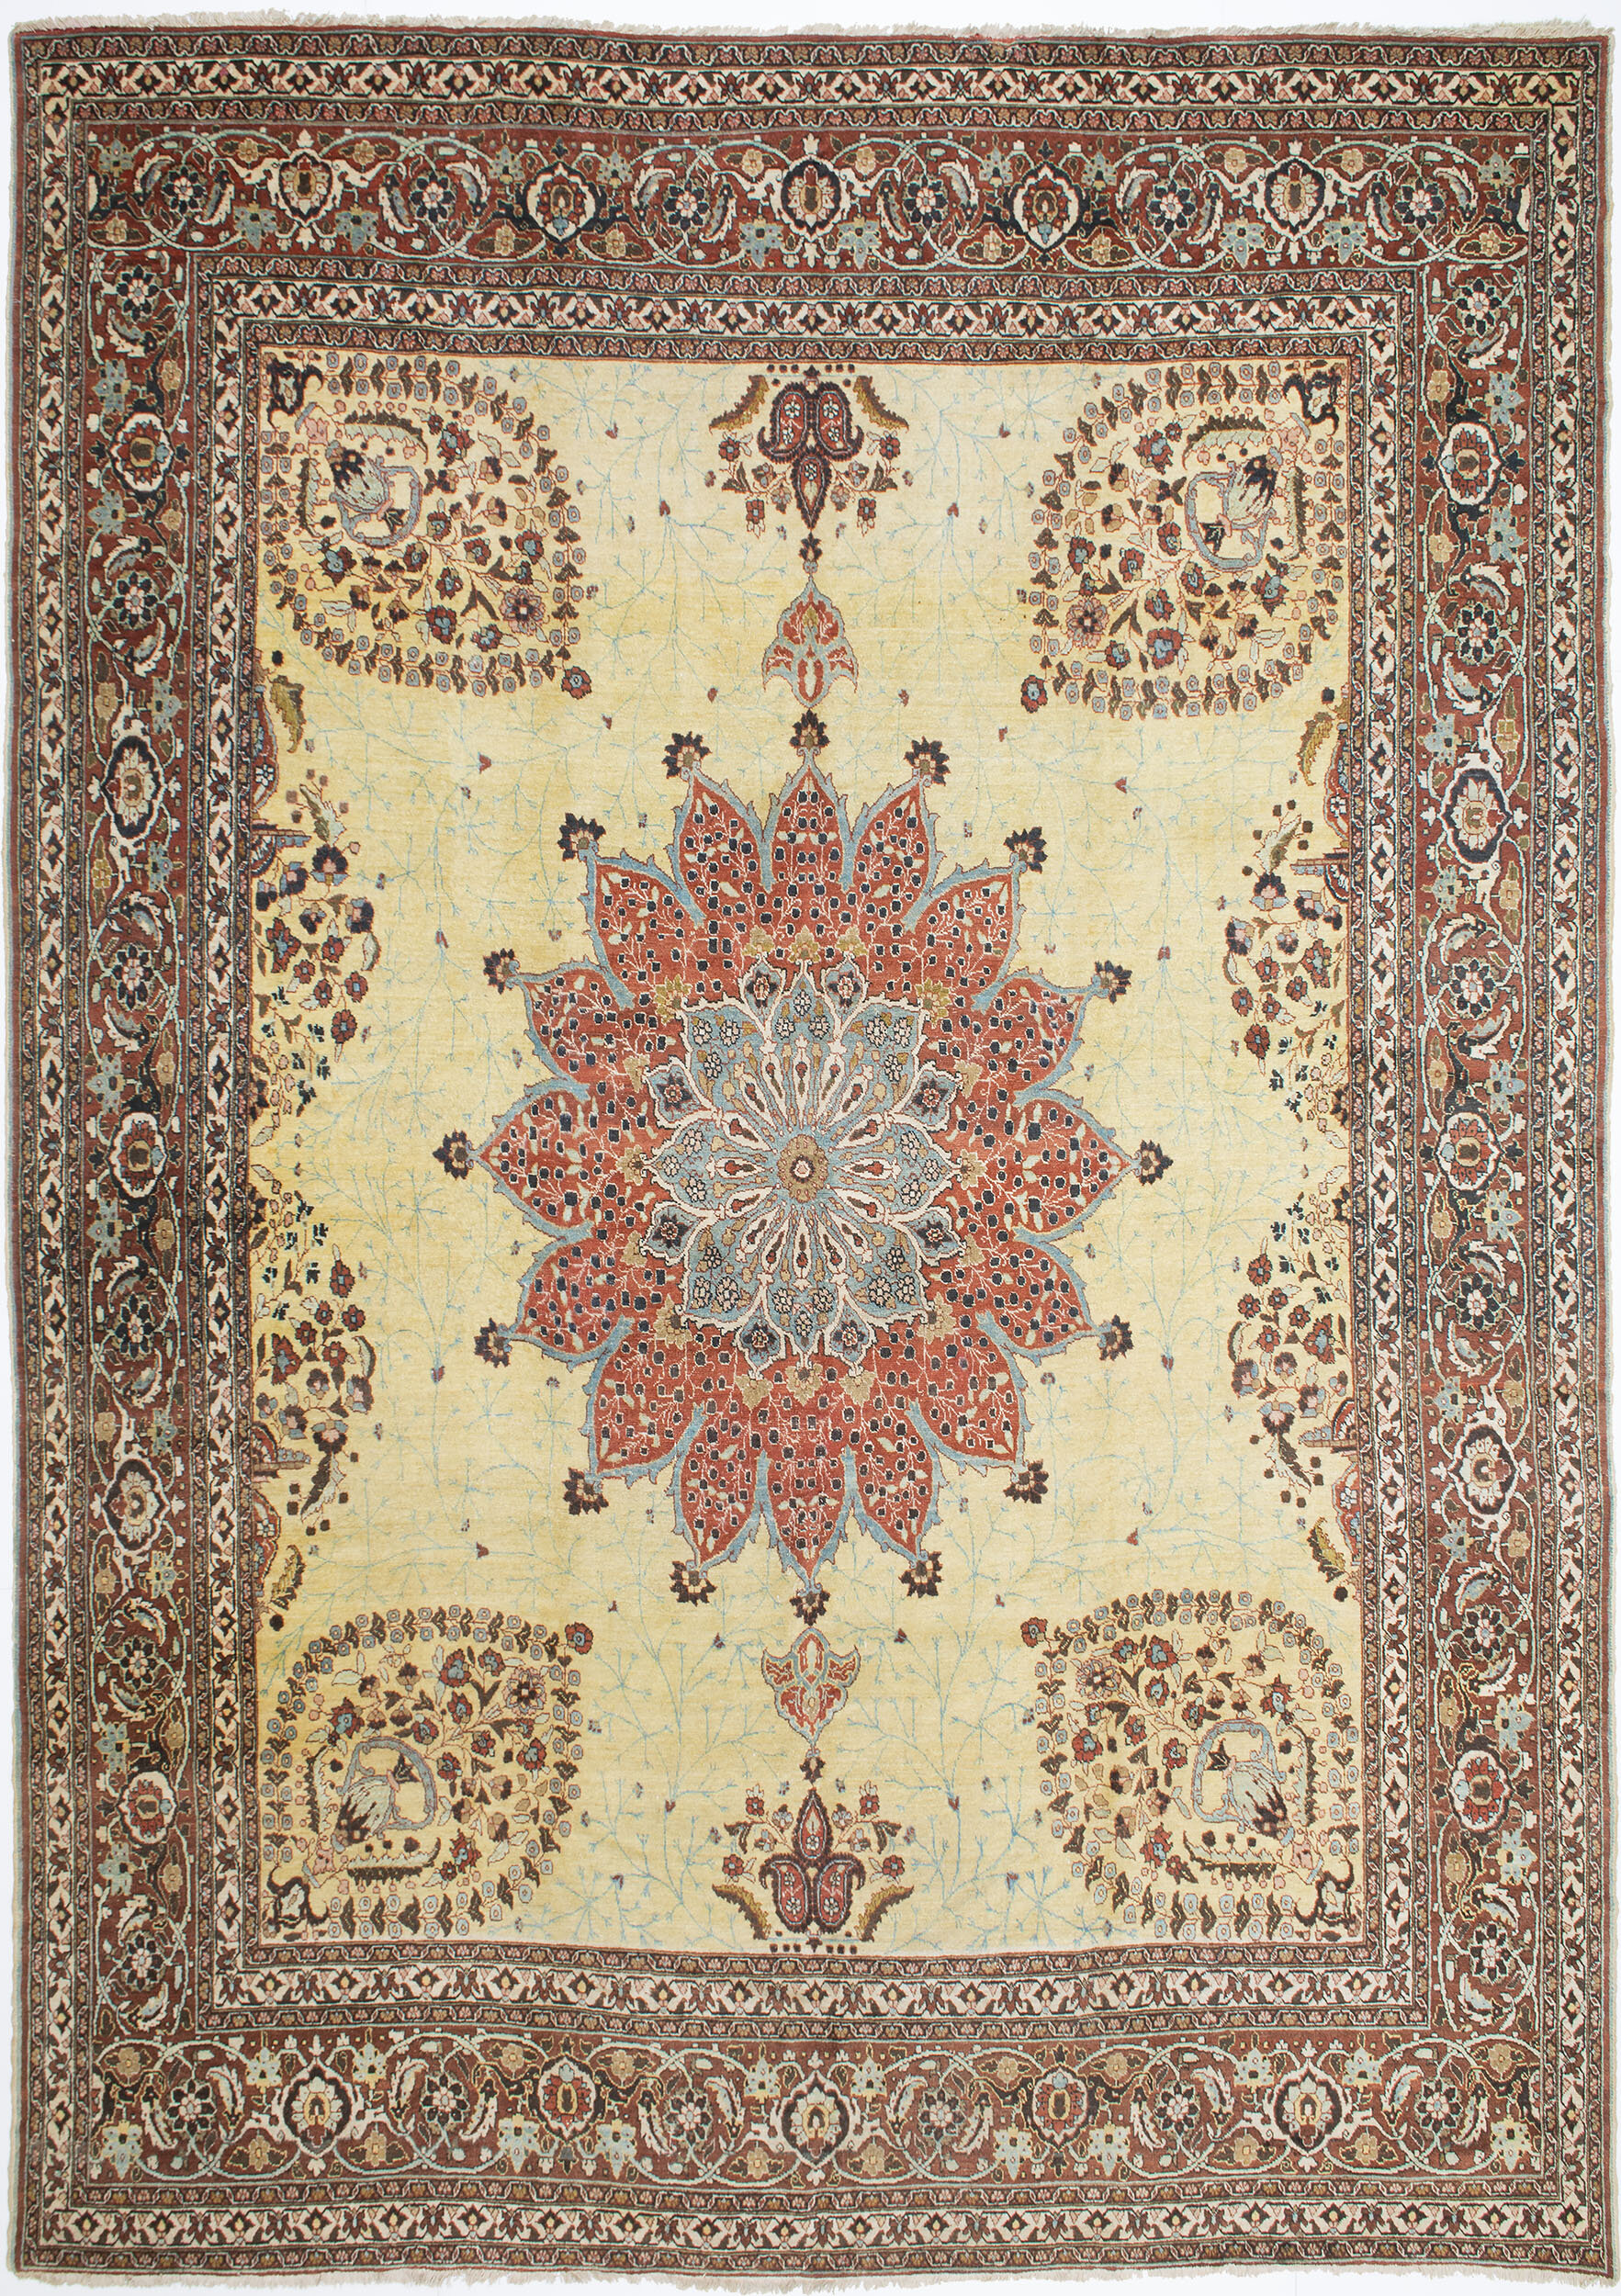 Tabriz Carpet 13' 0" x 9' 4" 